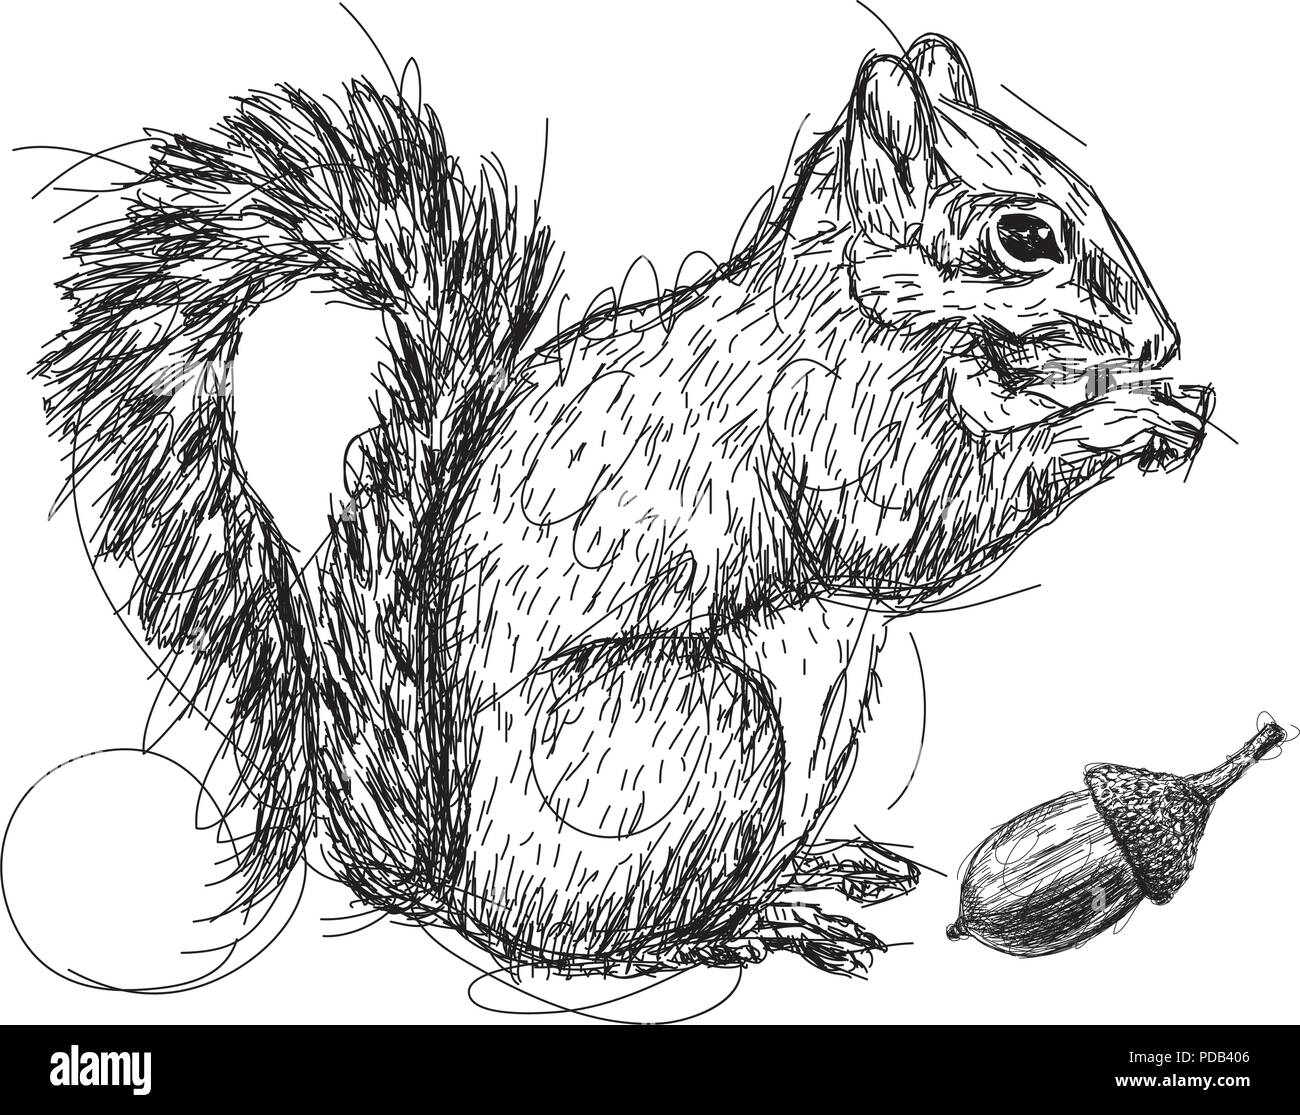 Squirrel sketch Stock Vector